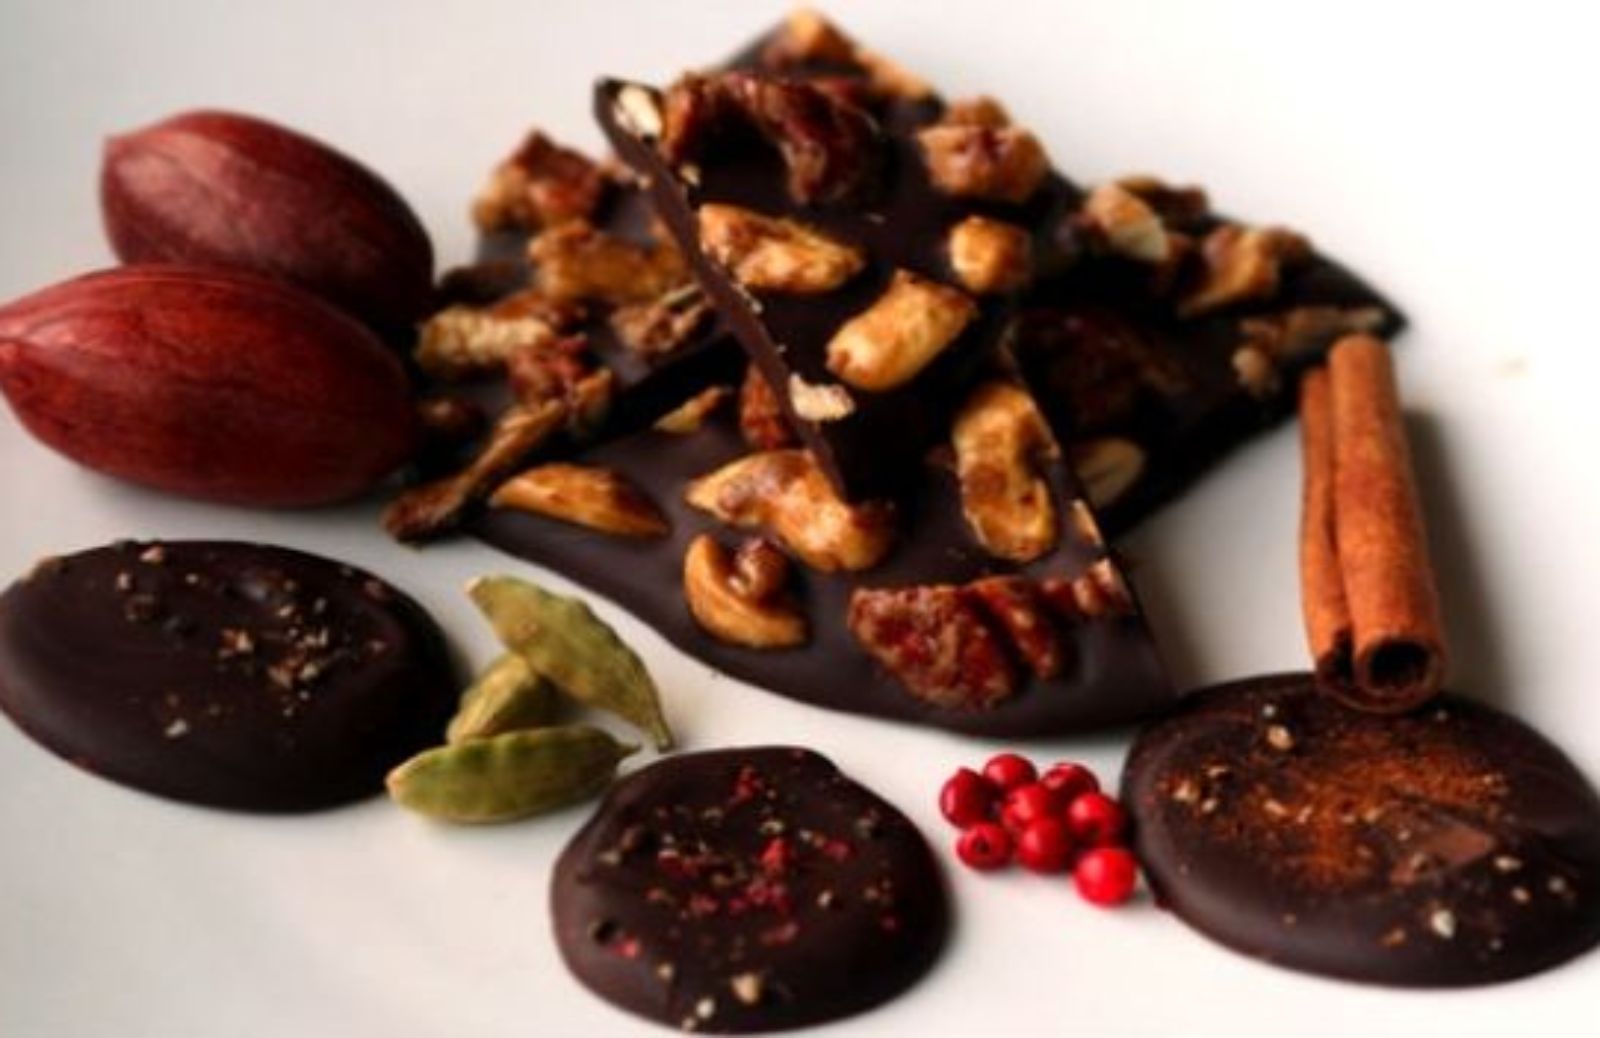 Regali di Natale in cucina: cioccolatini aromatizzati